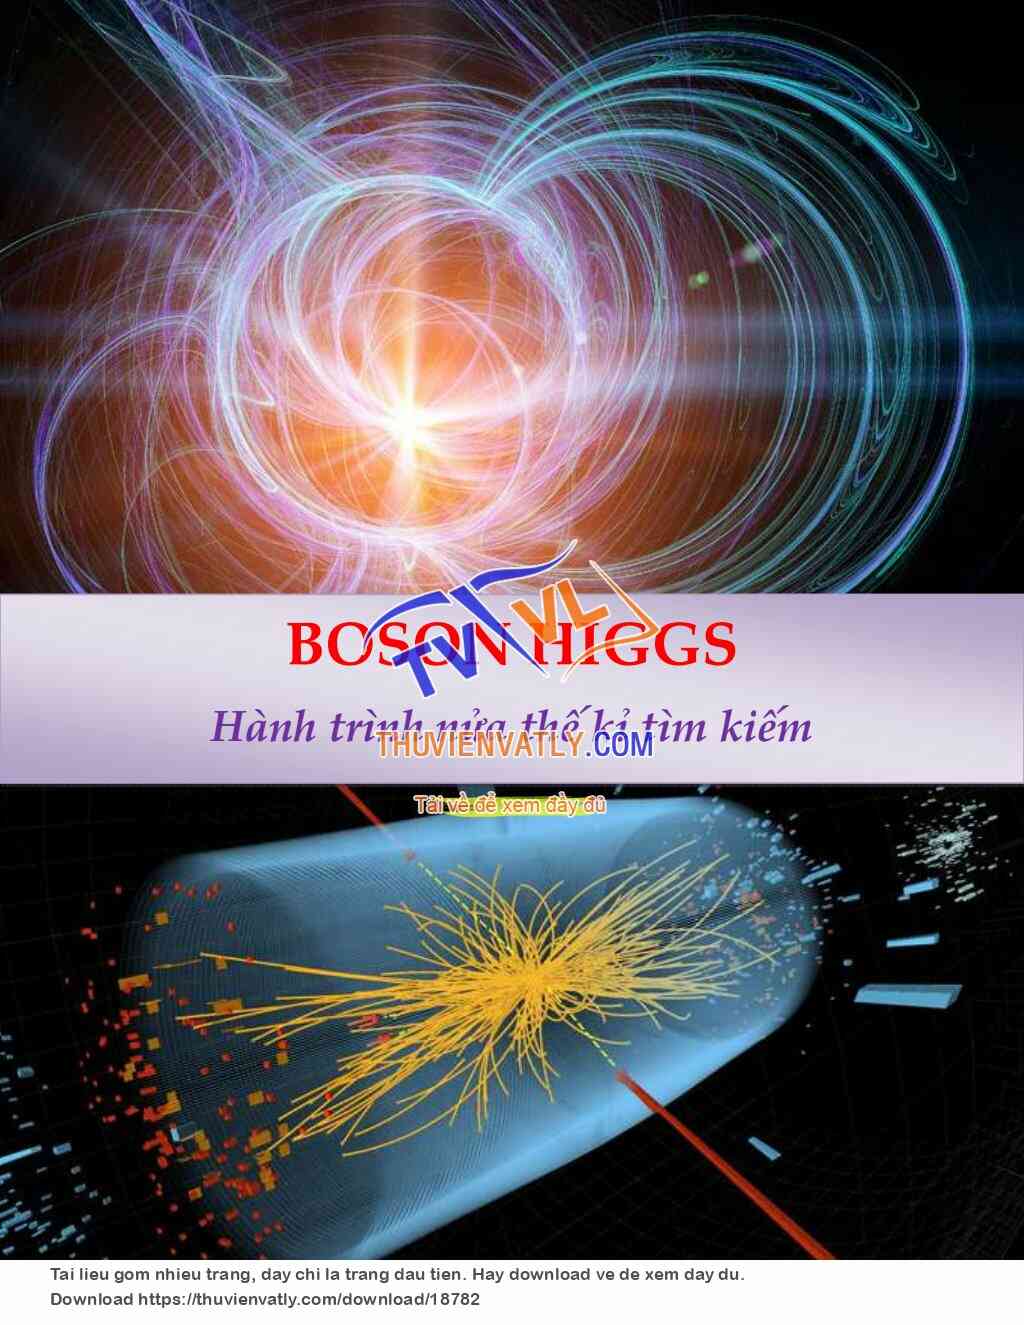 [Chuyên đề] Boson Higgs - Hành trình nửa thế kỉ tìm kiếm